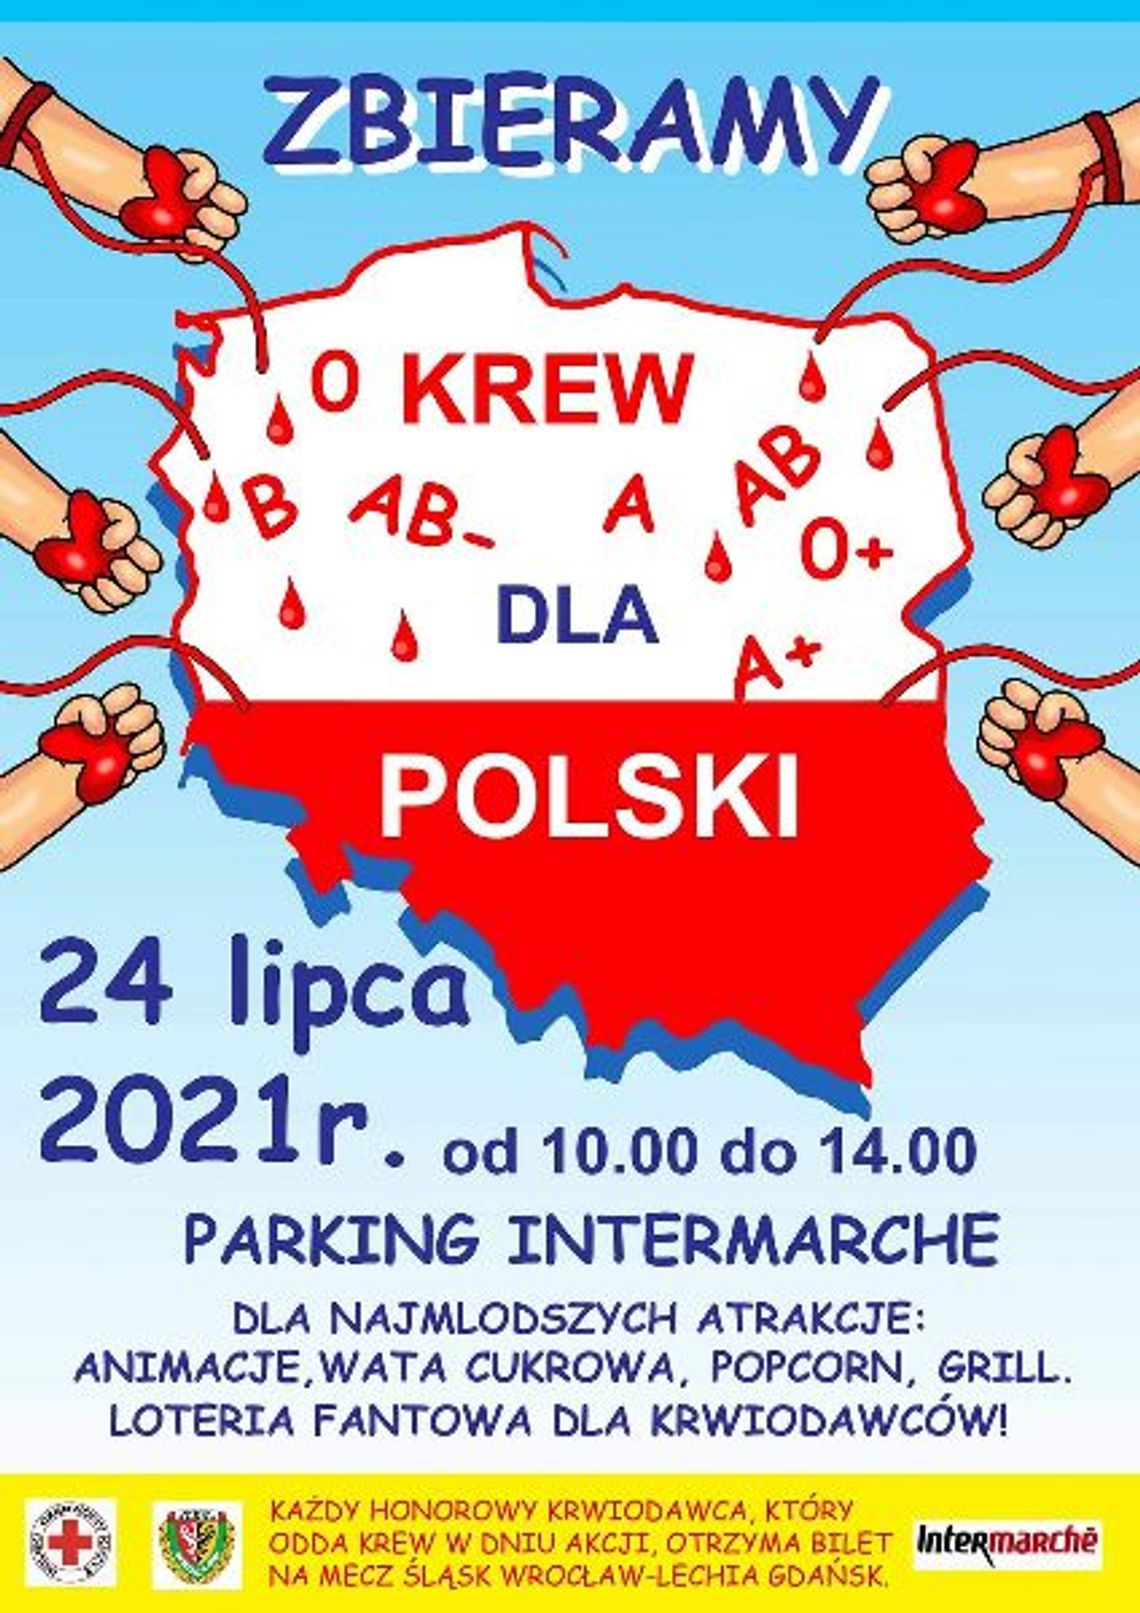 Zbieramy krew dla Polski